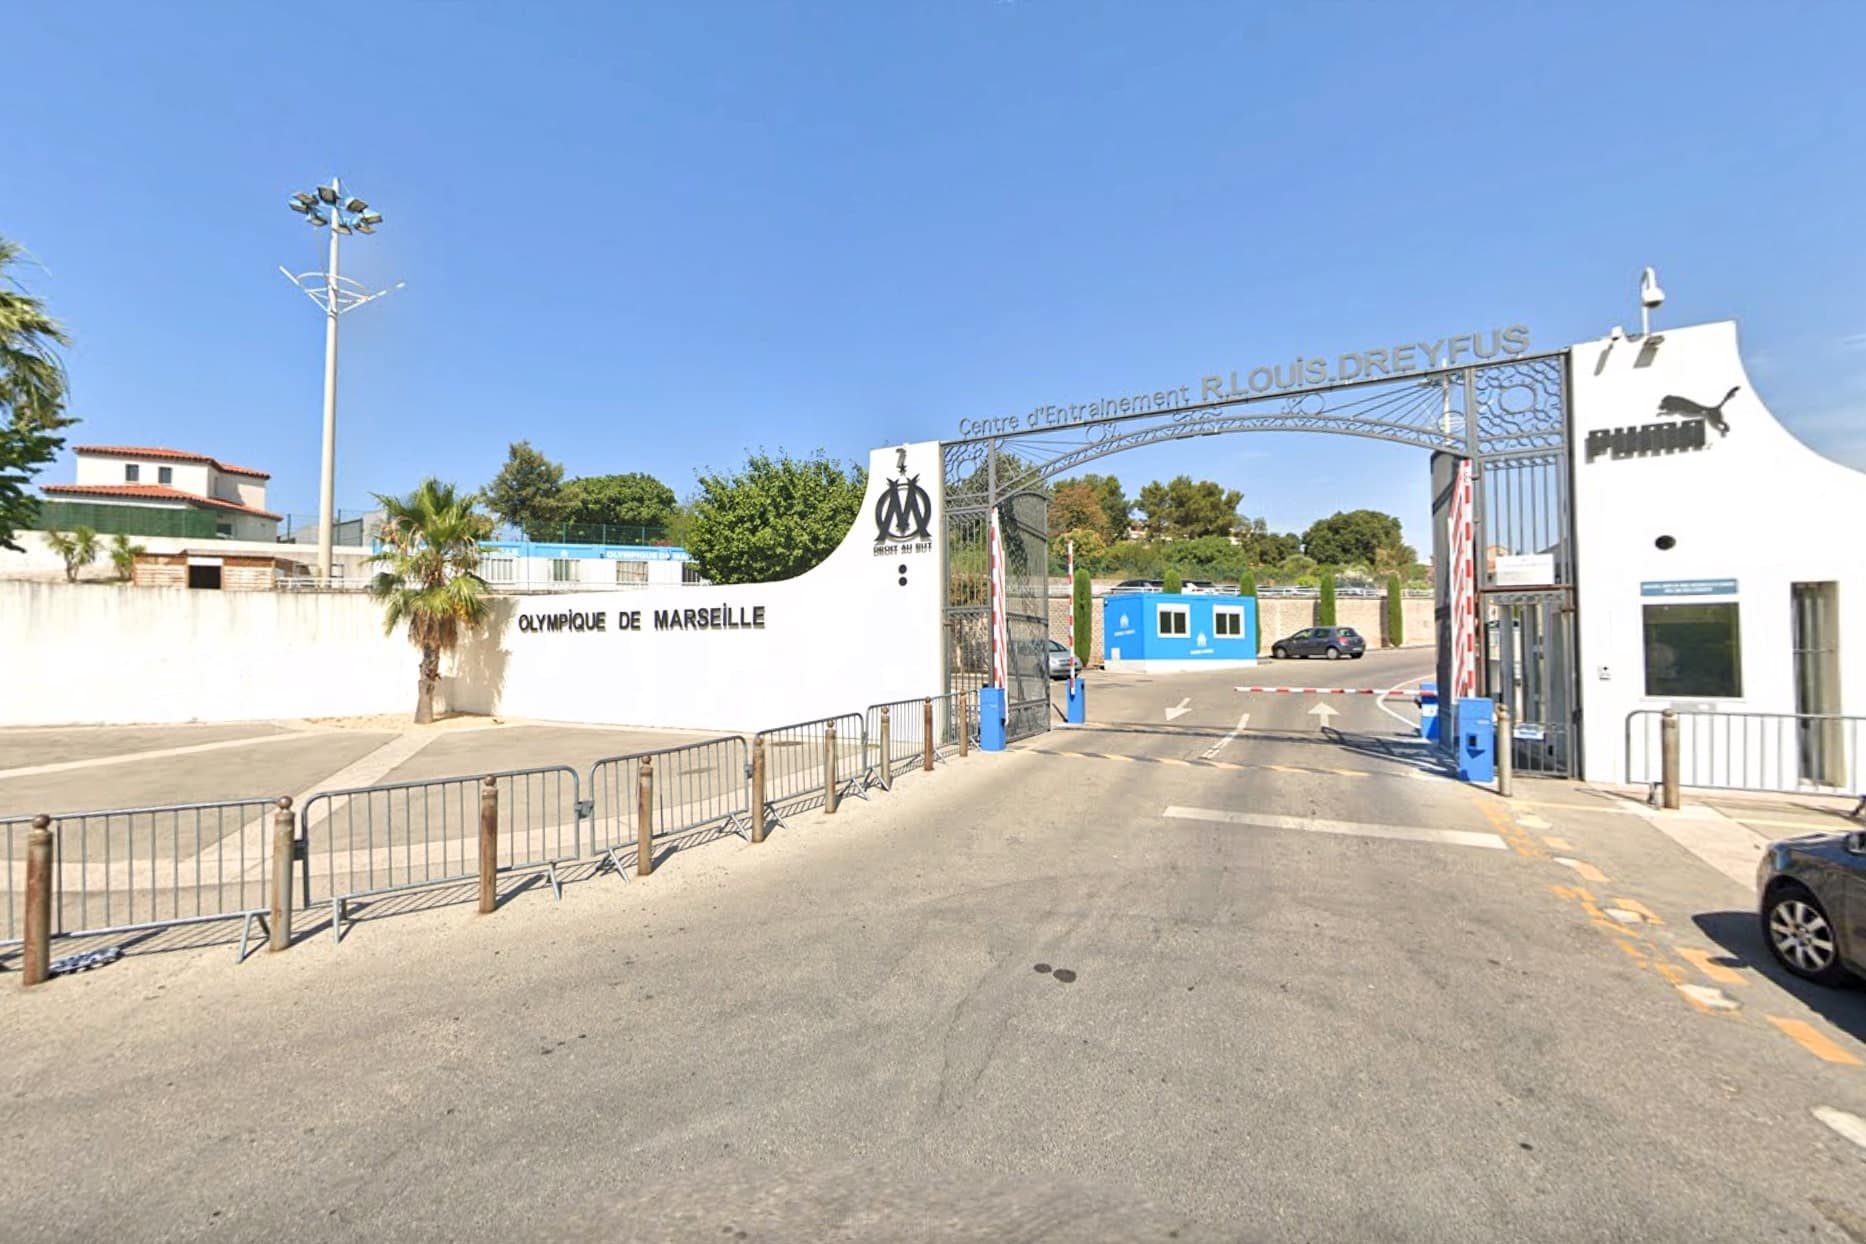 OM, Le centre d&rsquo;entrainement de l&rsquo;OM va produire sa propre électricité, Made in Marseille